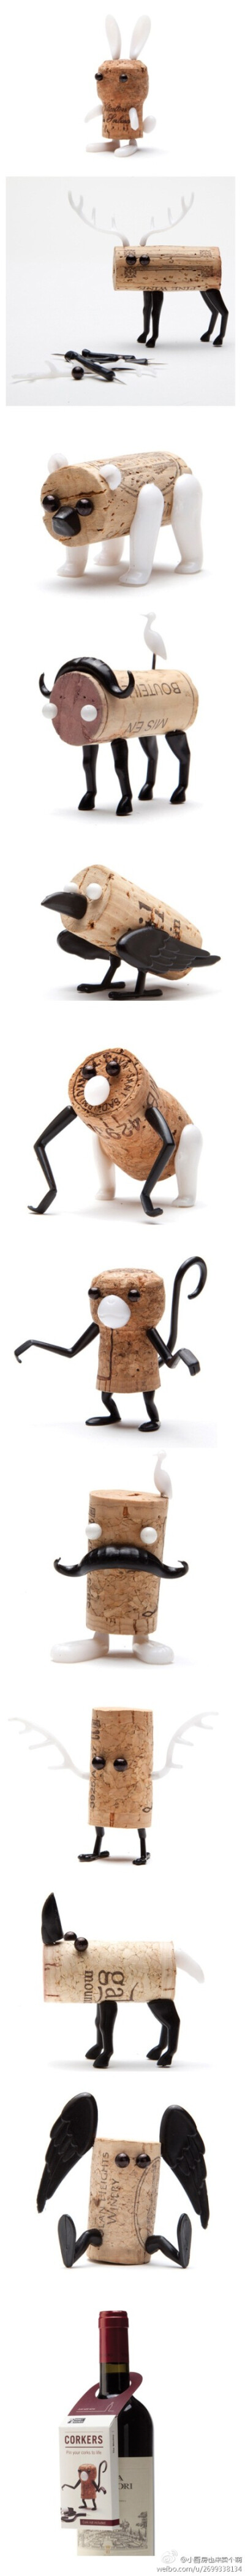 让红酒瓶塞化身为可爱小动物，这是以色列工作室 Monkey Business和 Reddish设计的变身小怪物~童鞋们，喜欢吗？